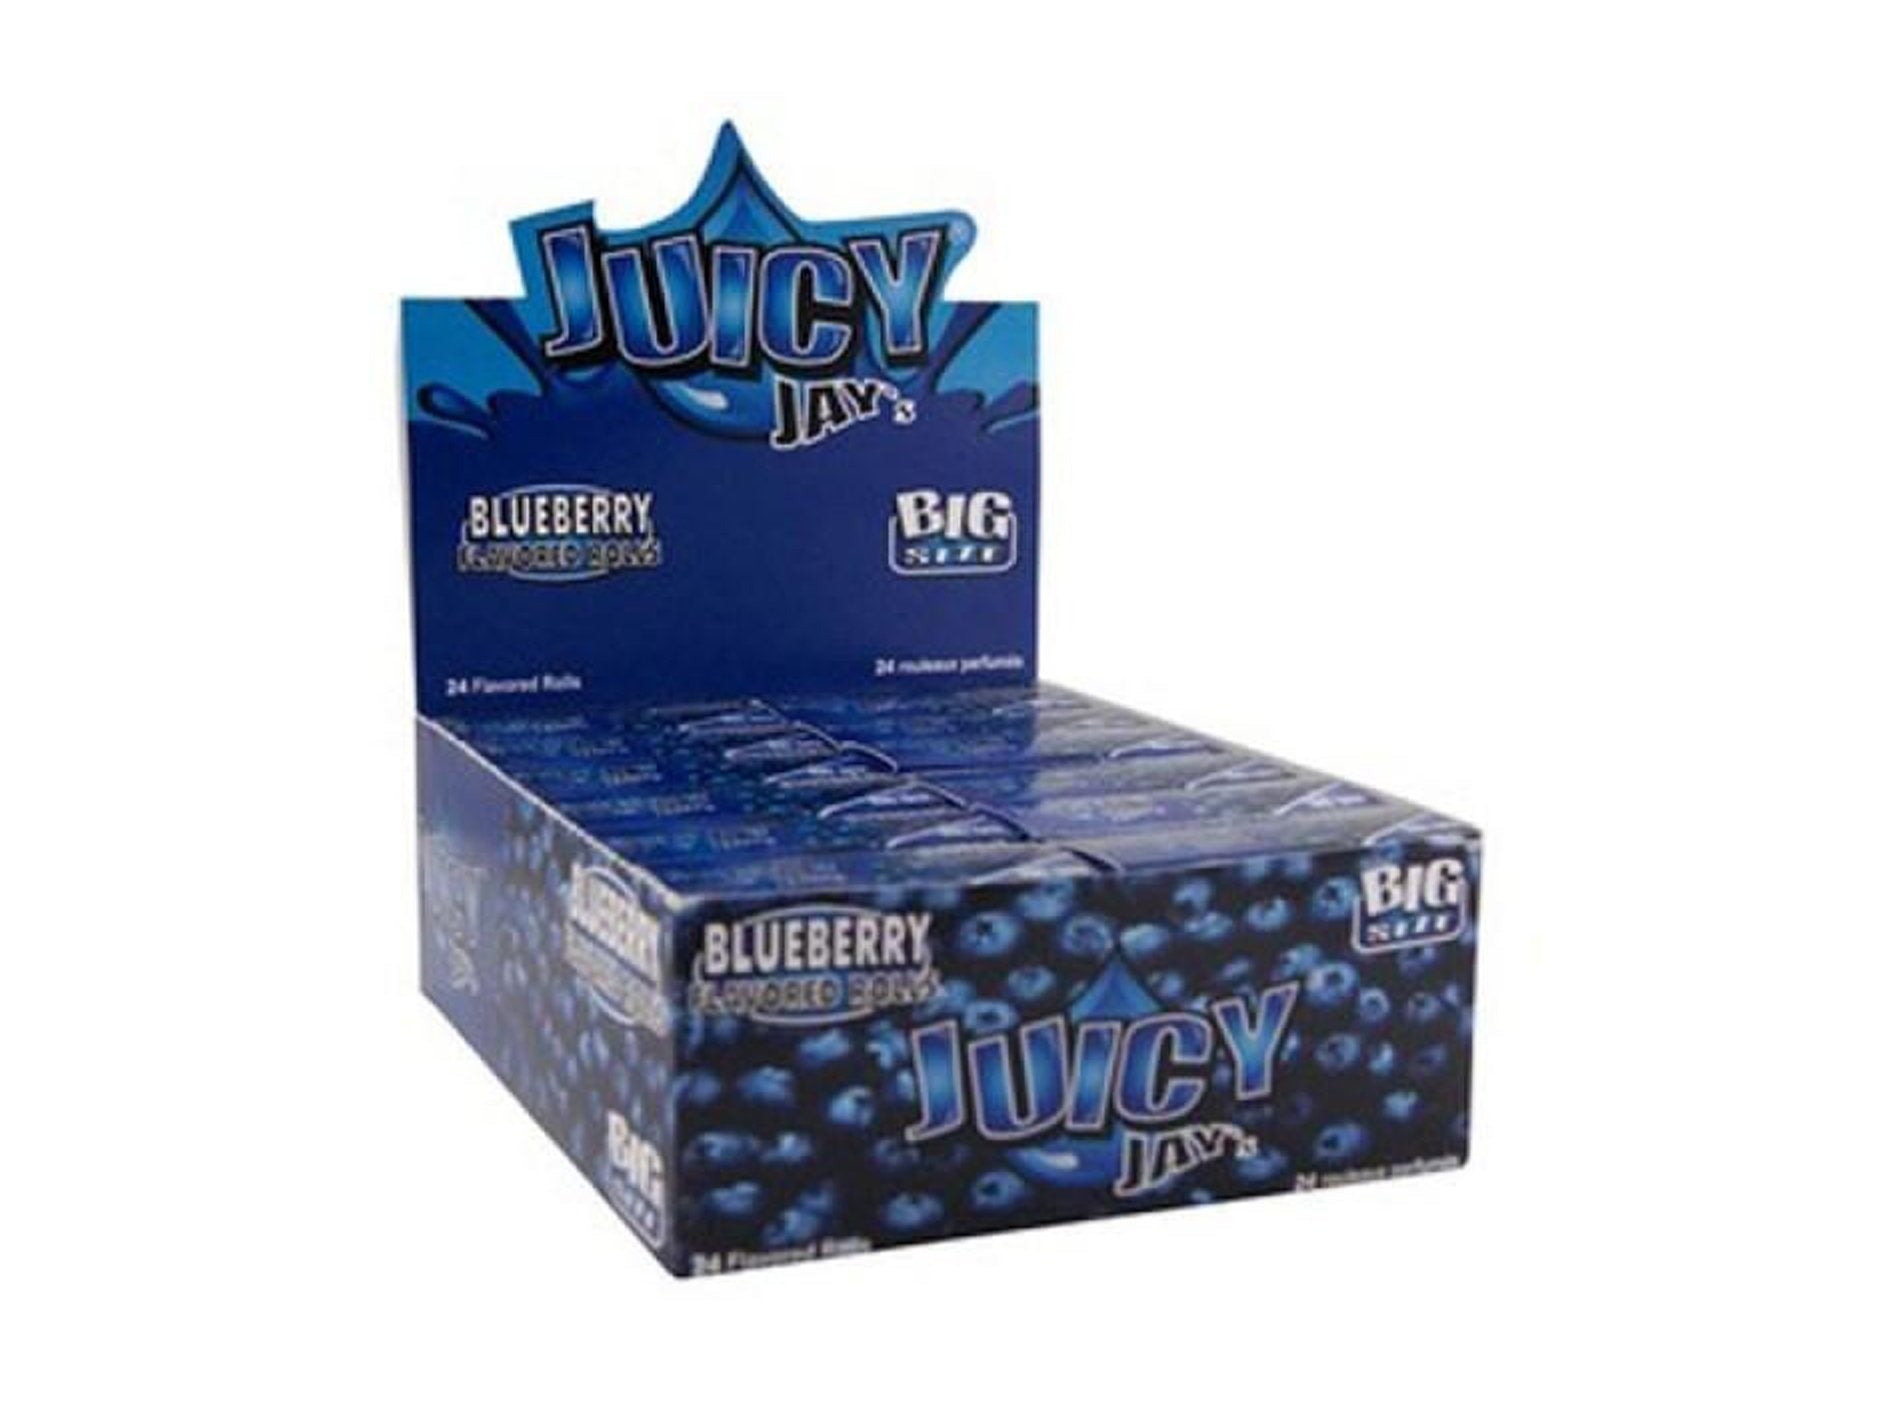 JUICY JAYS Flavoured Rolls - 24 Pack Box - VIR Wholesale